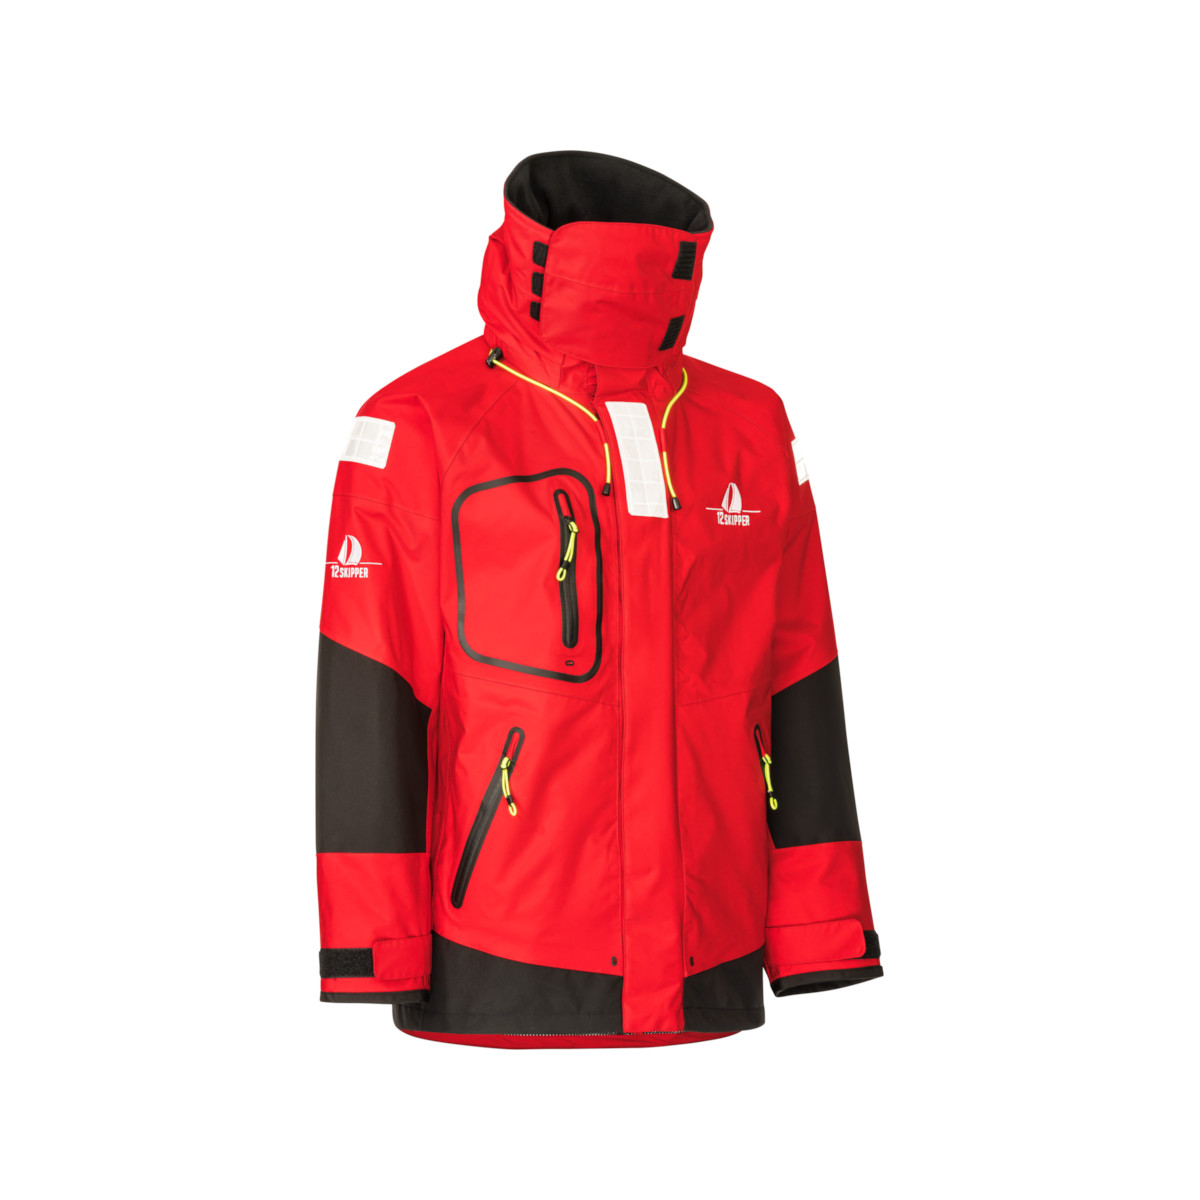 12skipper Magellan veste de quart hauturière, unisexe - rouge, taille S